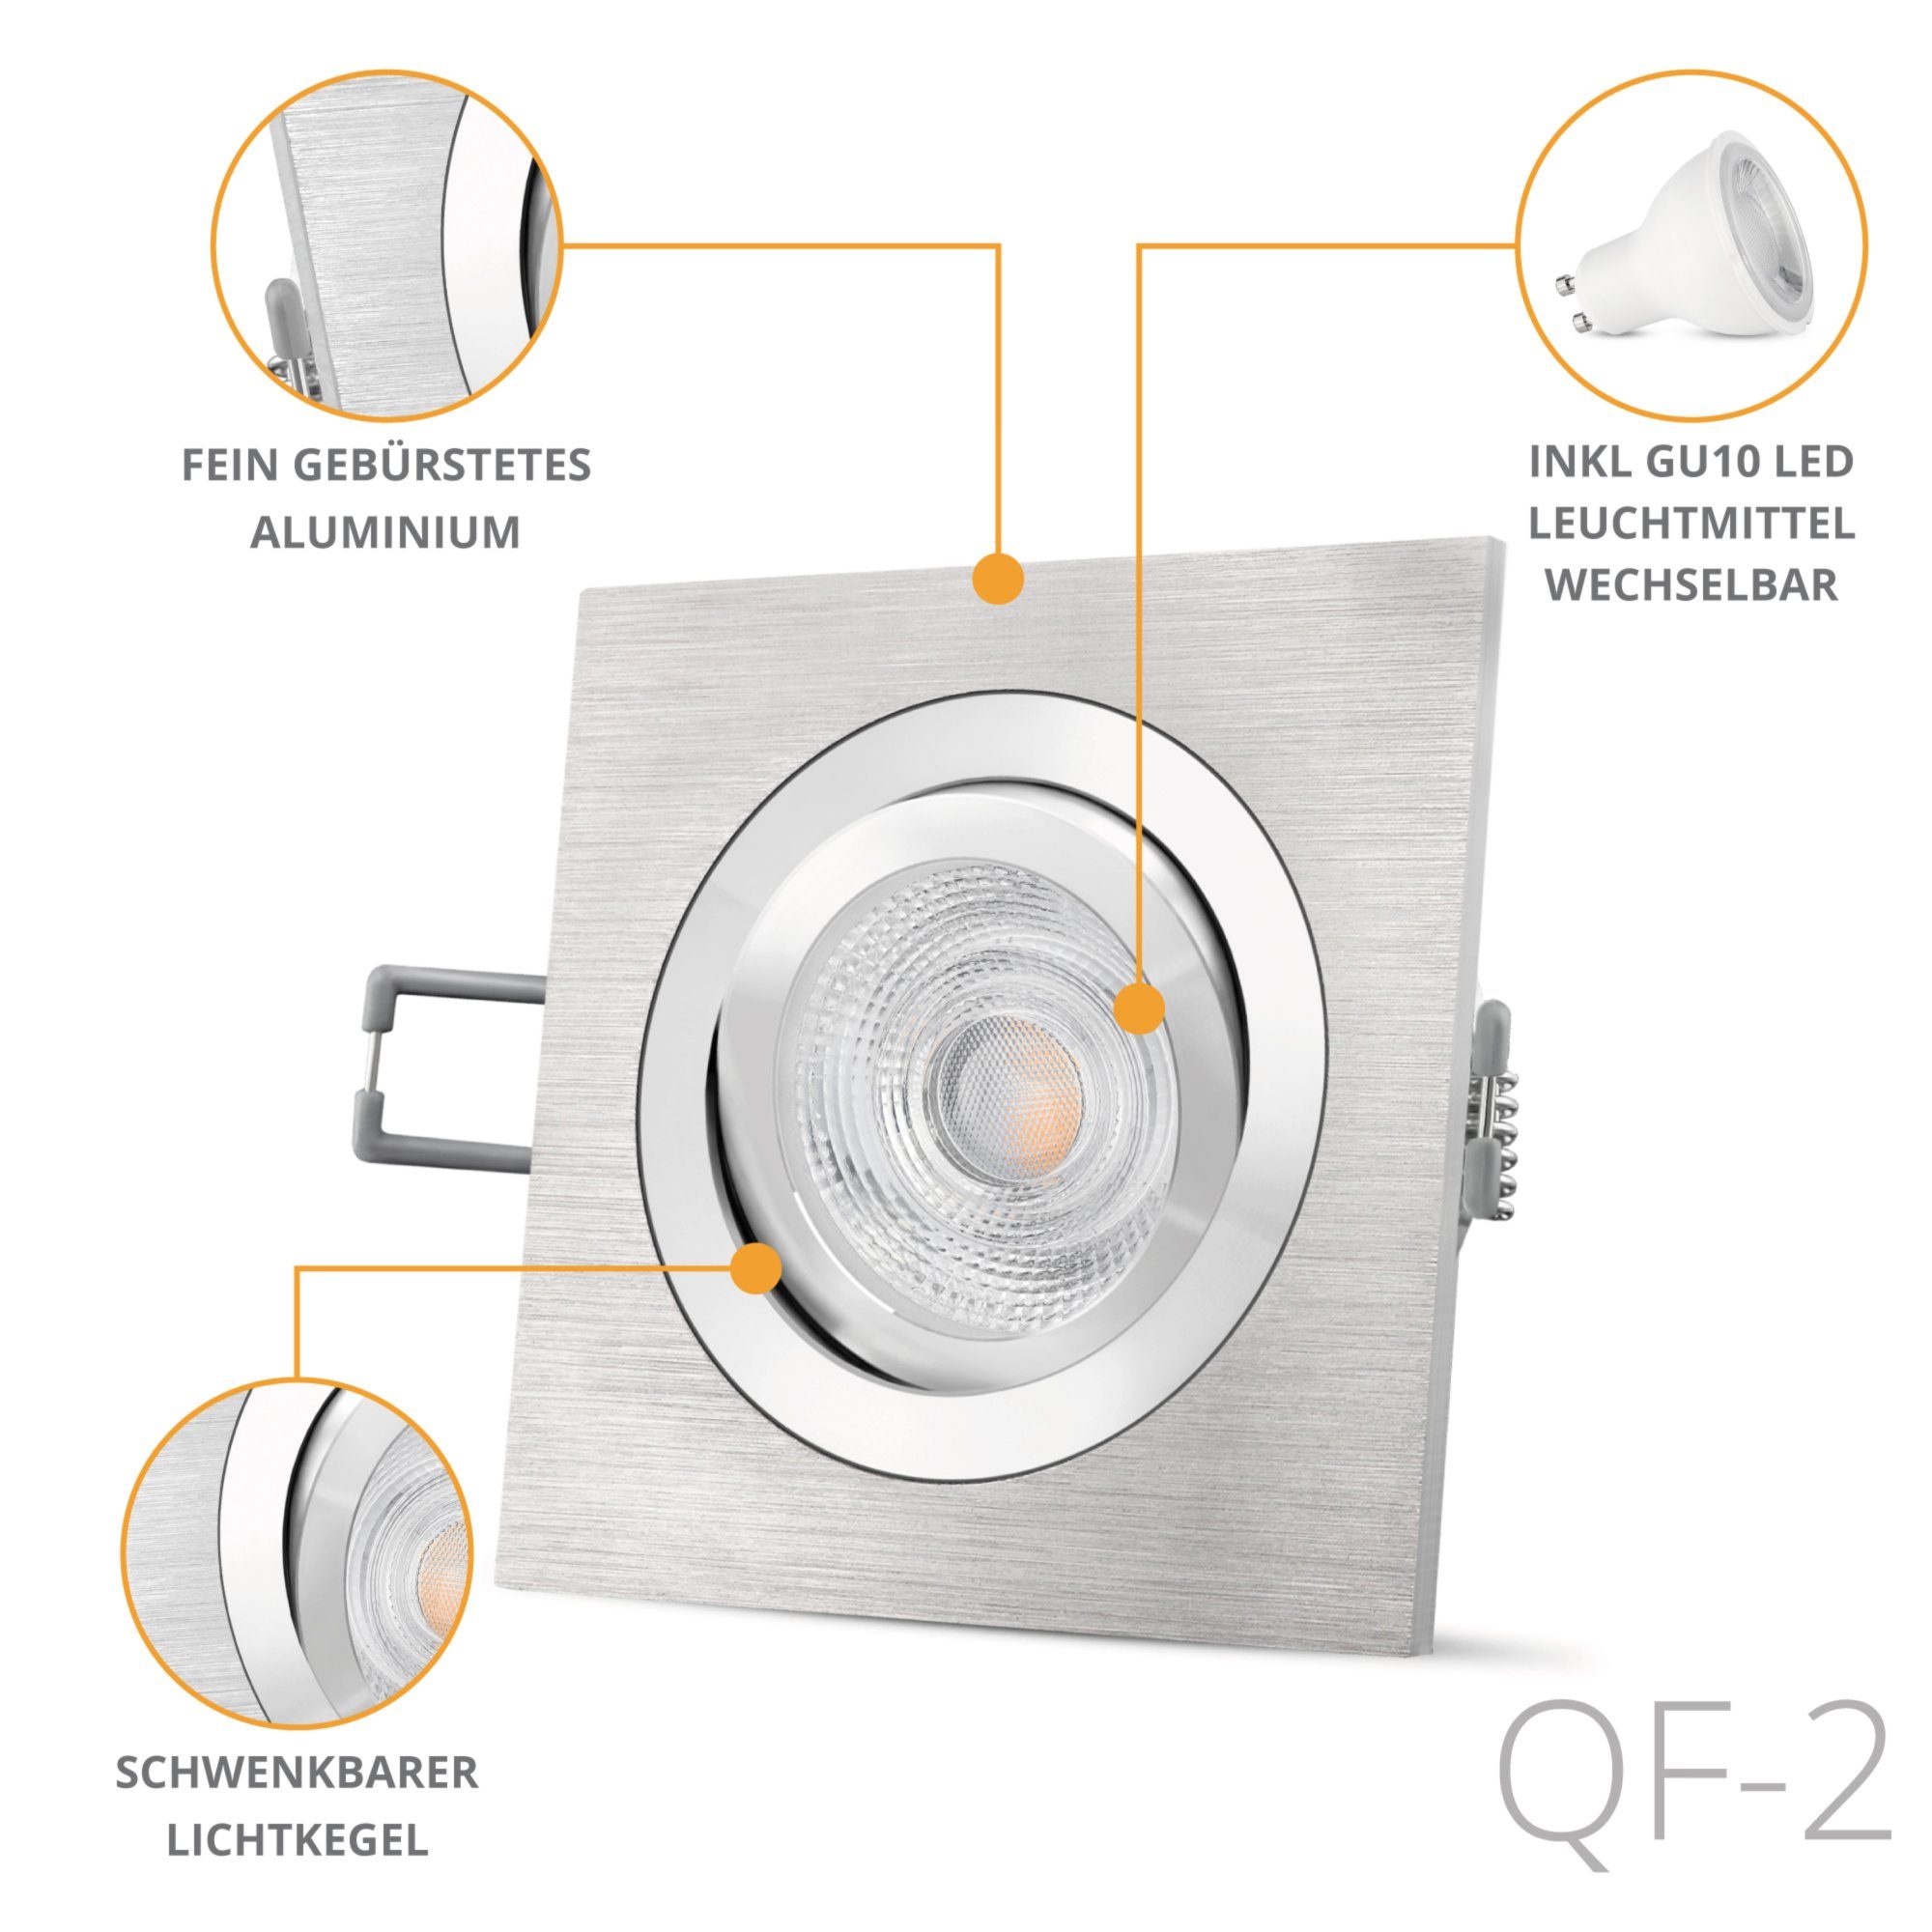 SSC-LUXon LED Einbaustrahler QF-2 Einbauleuchte Alu quadratische schwenkbar, Warmweiß LED gebuerstet